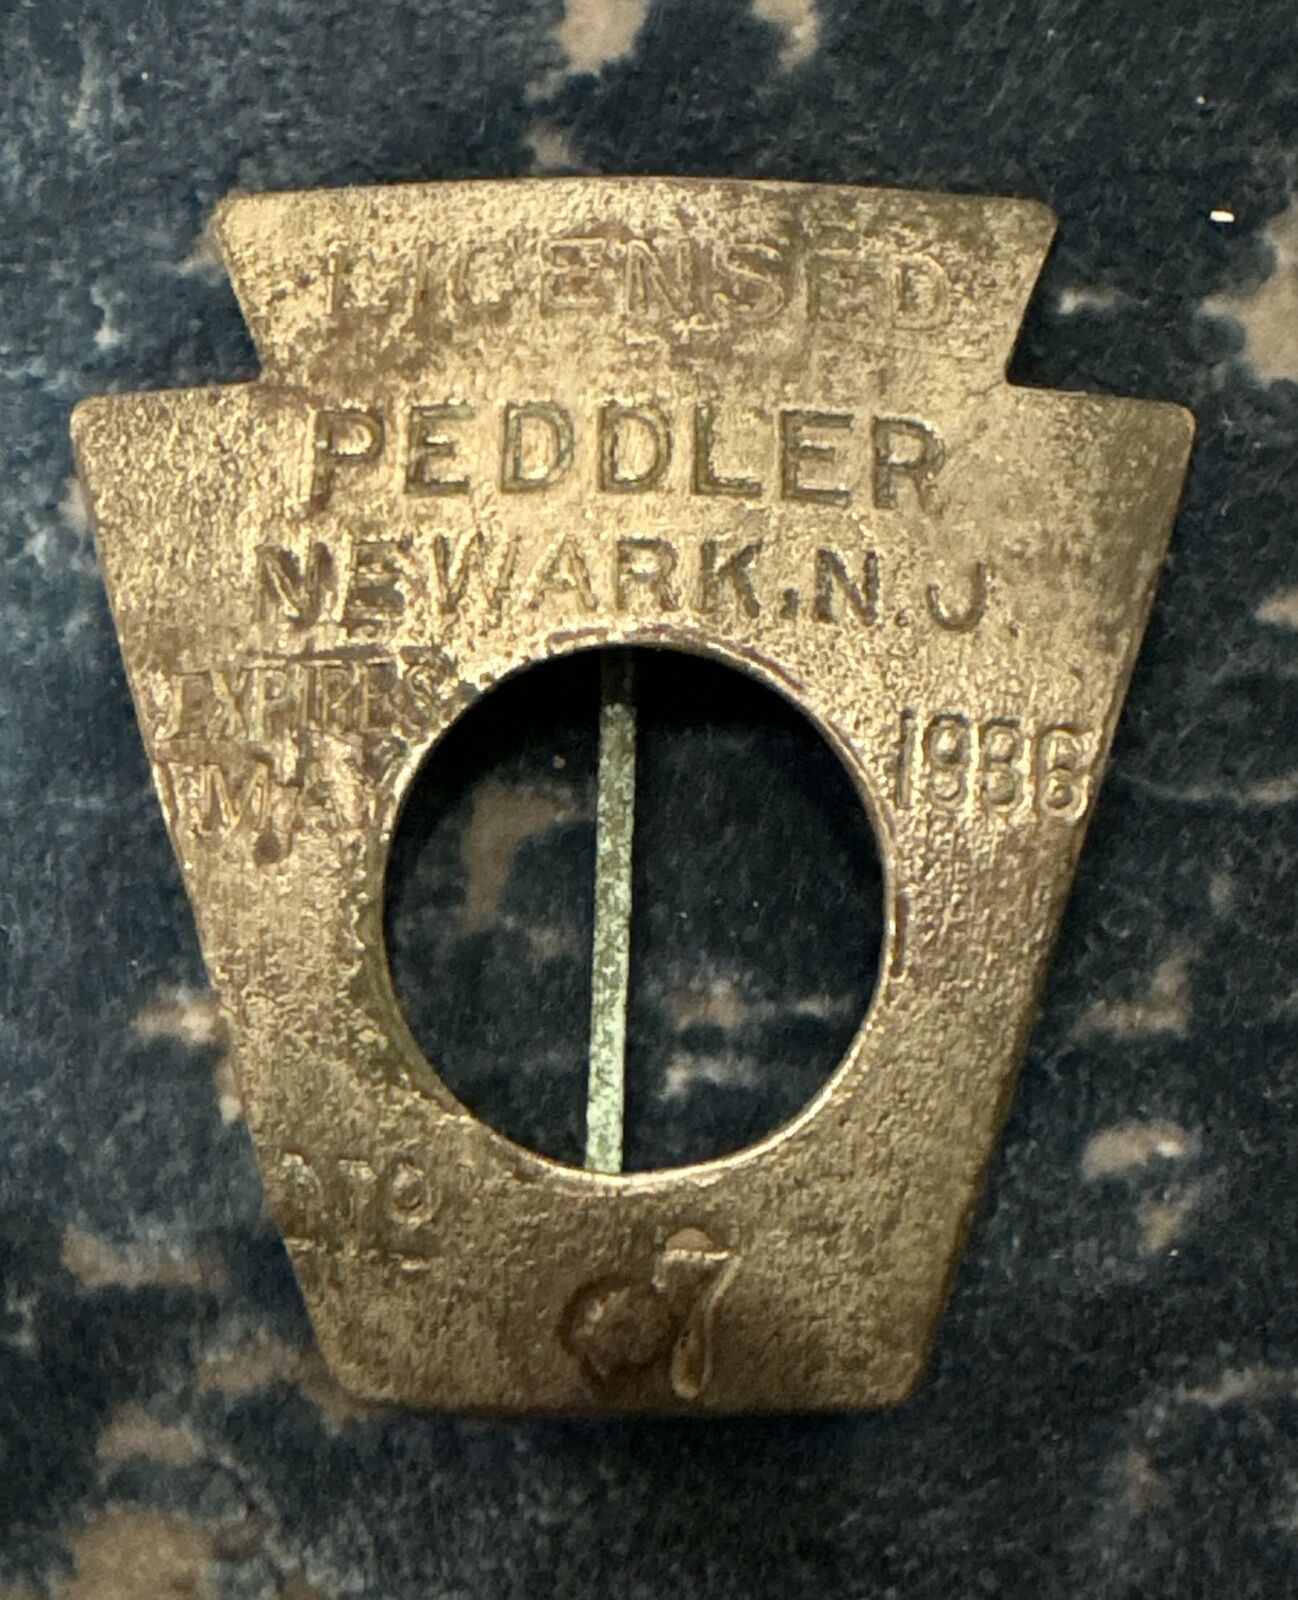 1936 LICENSED PEDDLER Badge Pinback NEWARK NJ New Jersey No 7 - 1930s